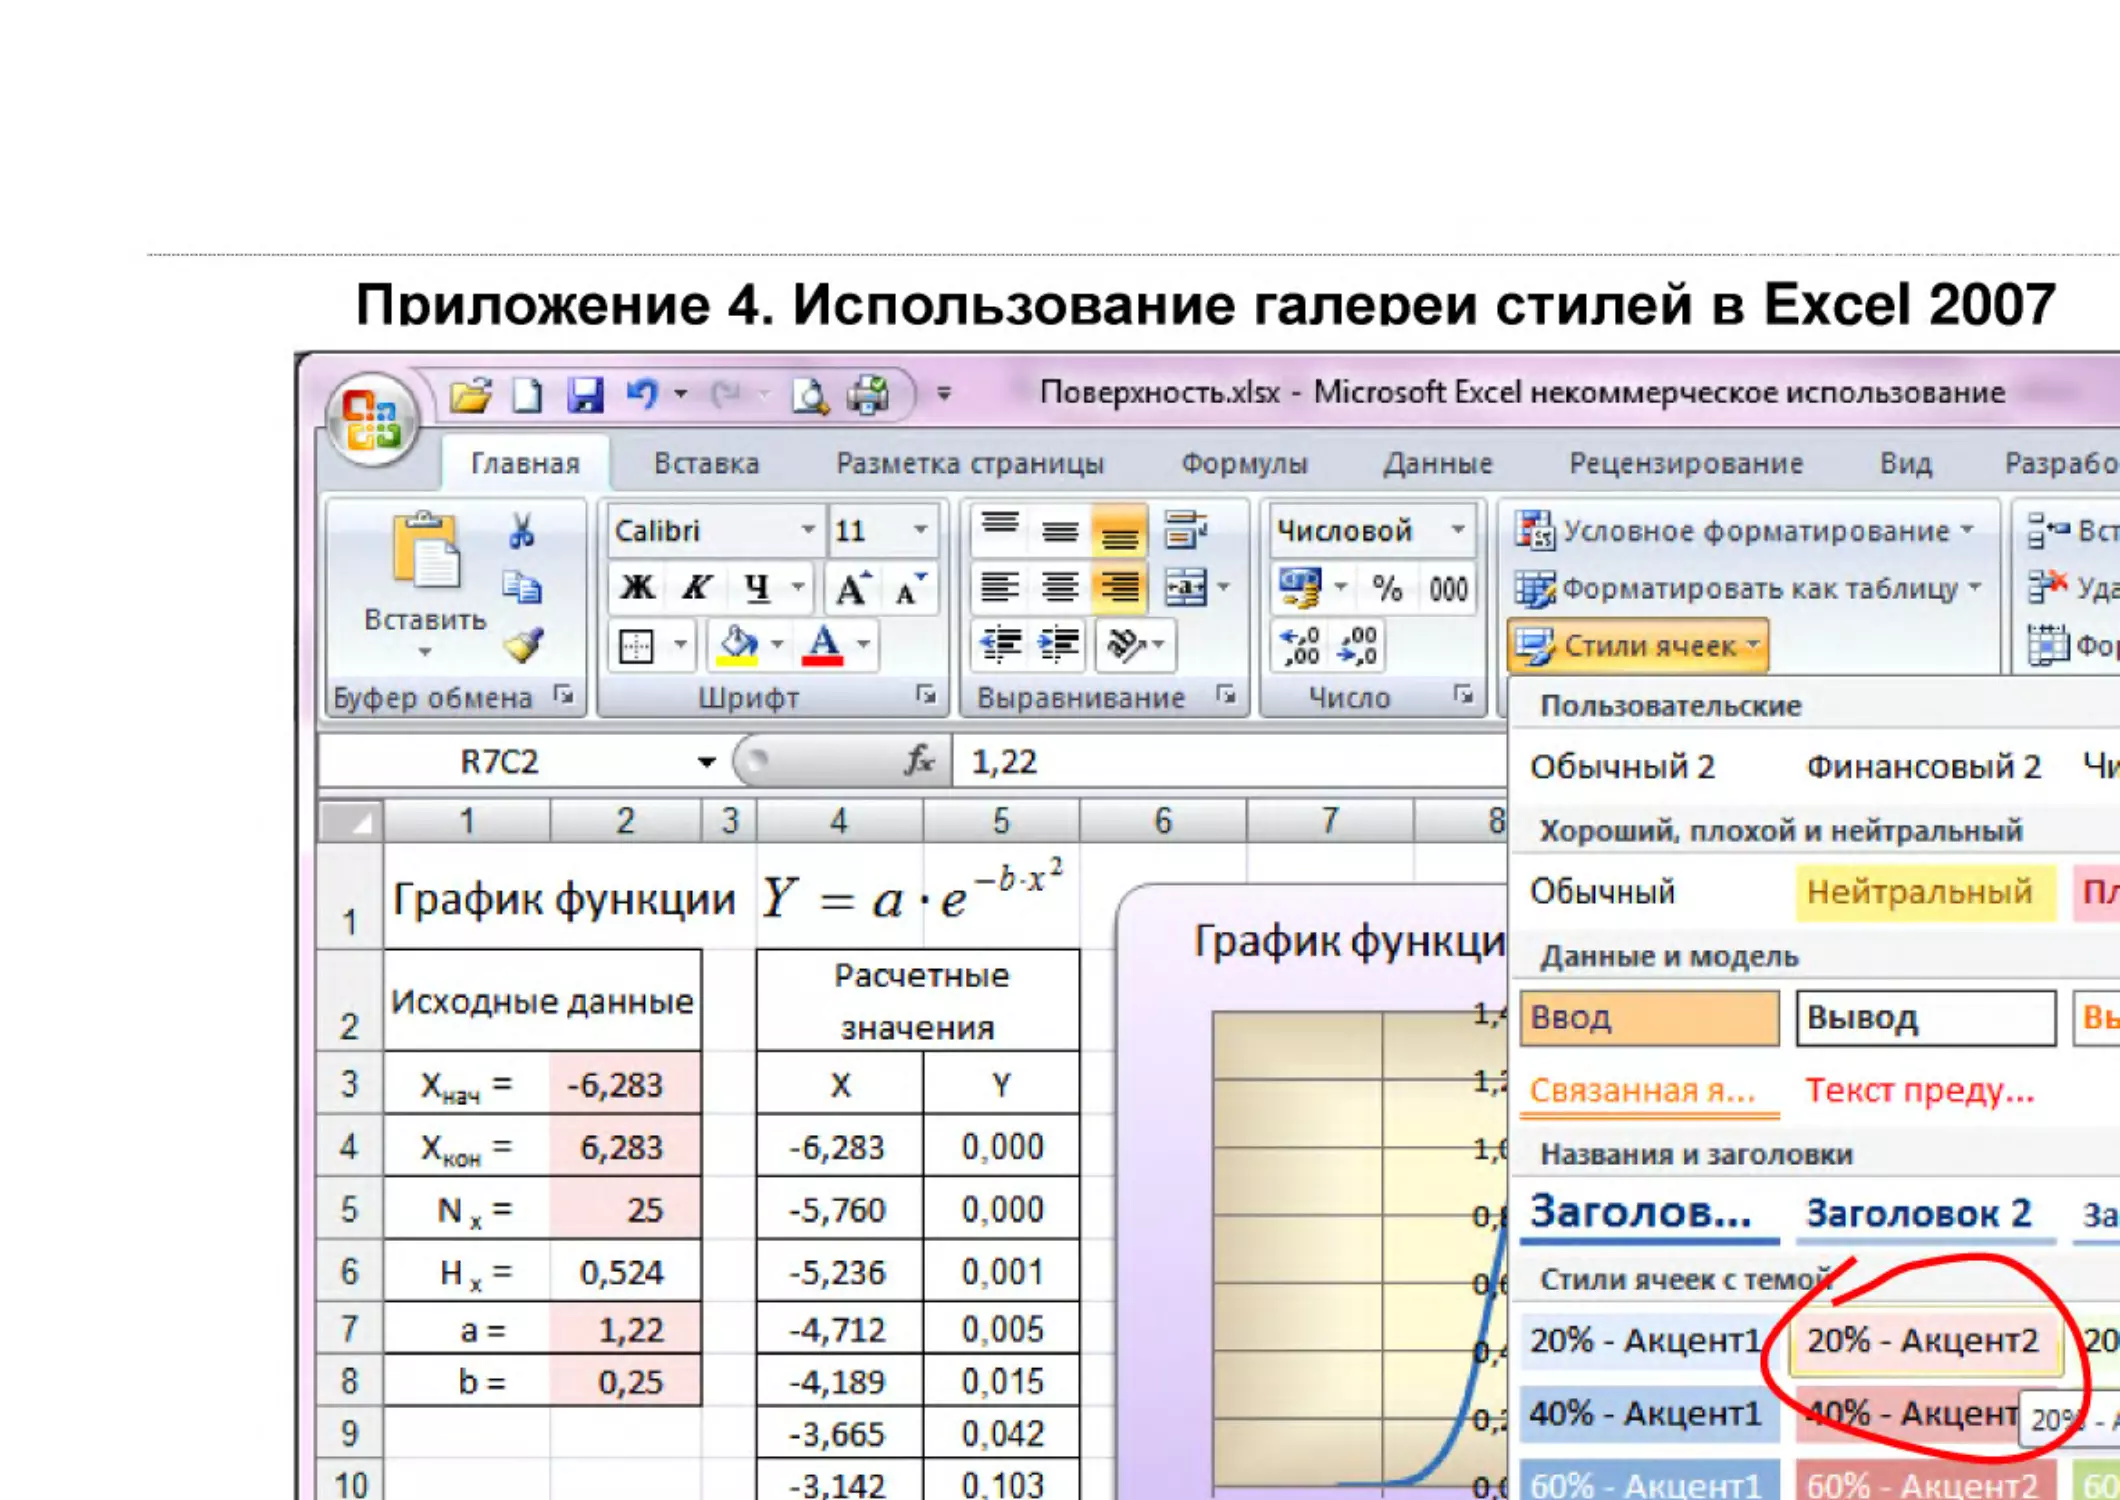 Informatika_Uchebnik_dlya_vuzov_2010 458